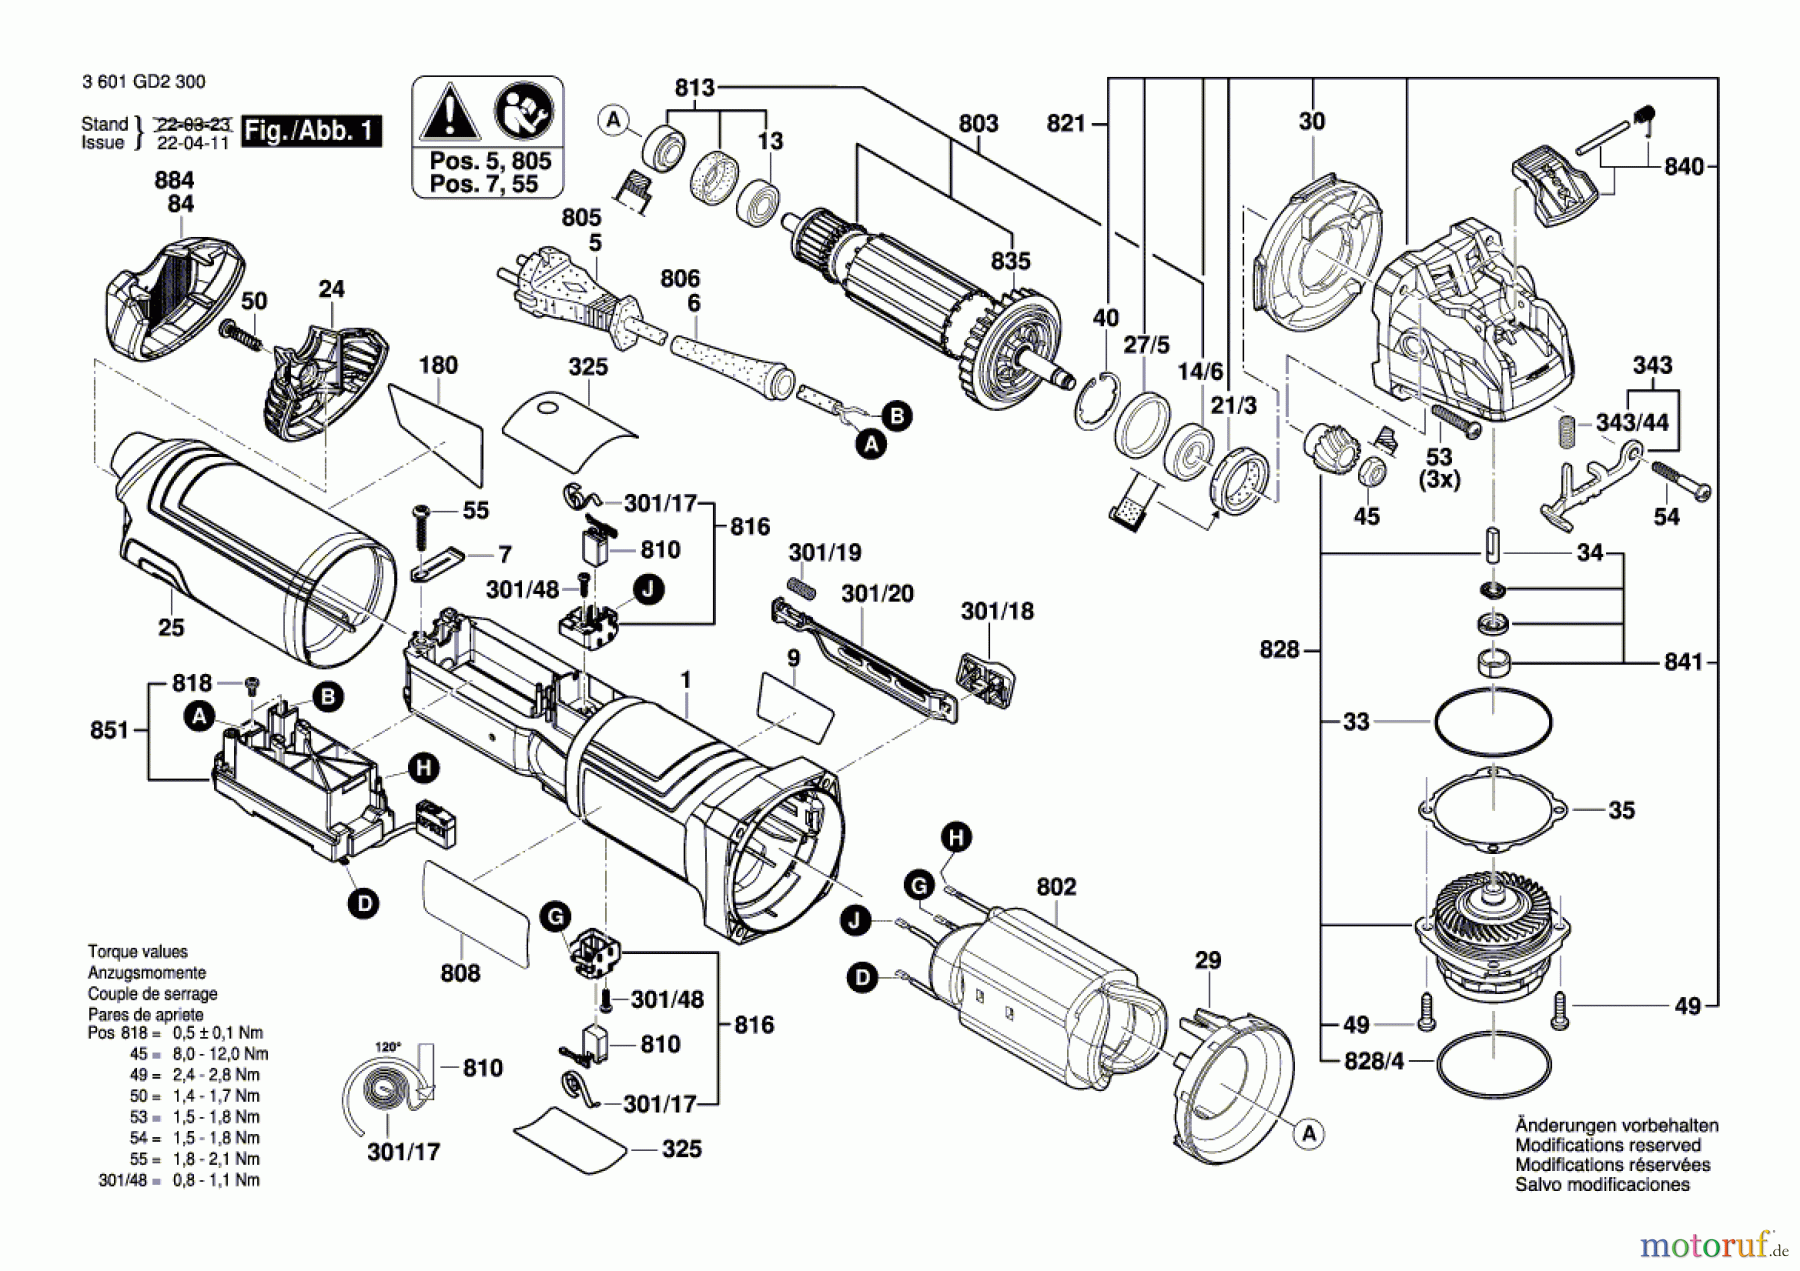  Bosch Werkzeug Winkelschleifer GWX 17-125 S Seite 1